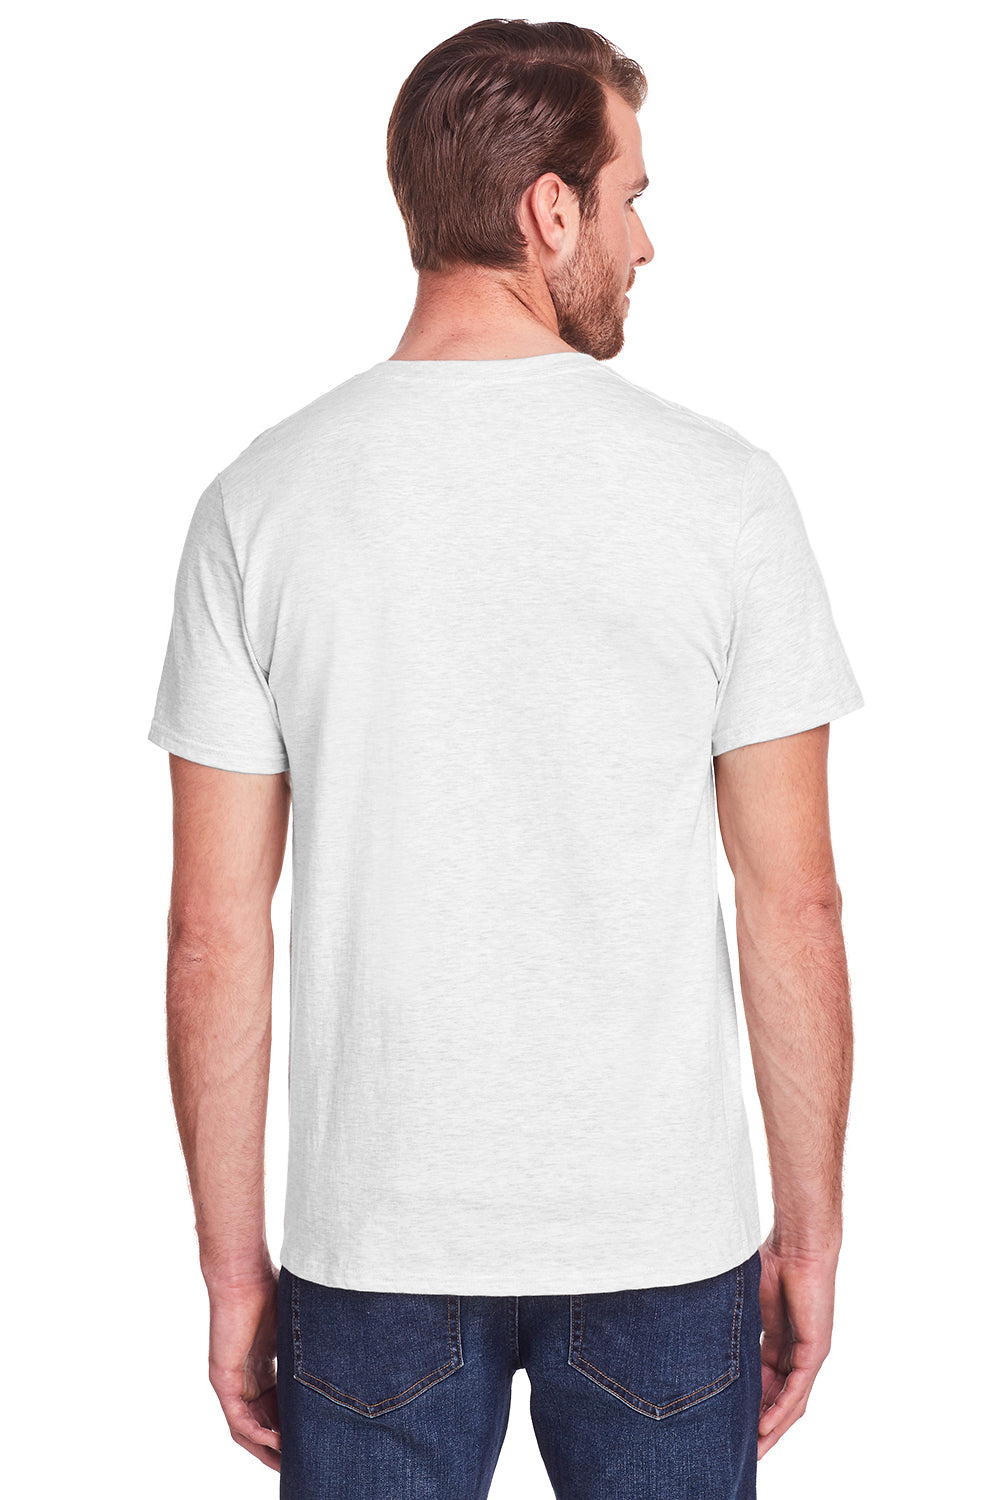 Fruit Of The Loom IC47MR Mens Iconic Short Sleeve Crewneck T-Shirt White Back